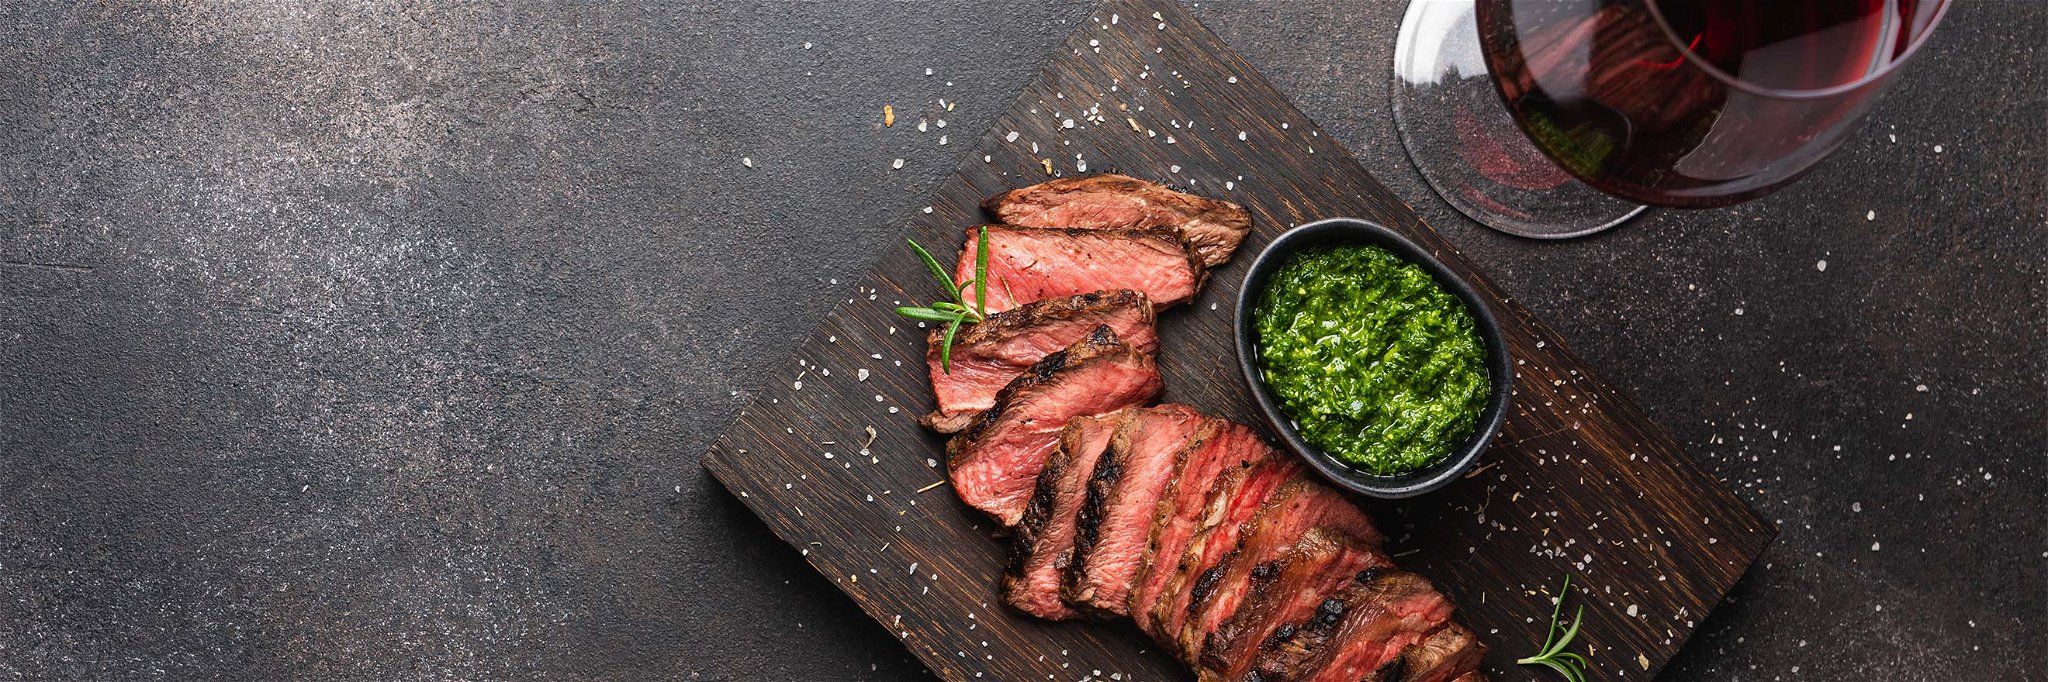 Welcher Wein passt am Besten zu einem frisch gegrillten Rindfleisch-Steak?